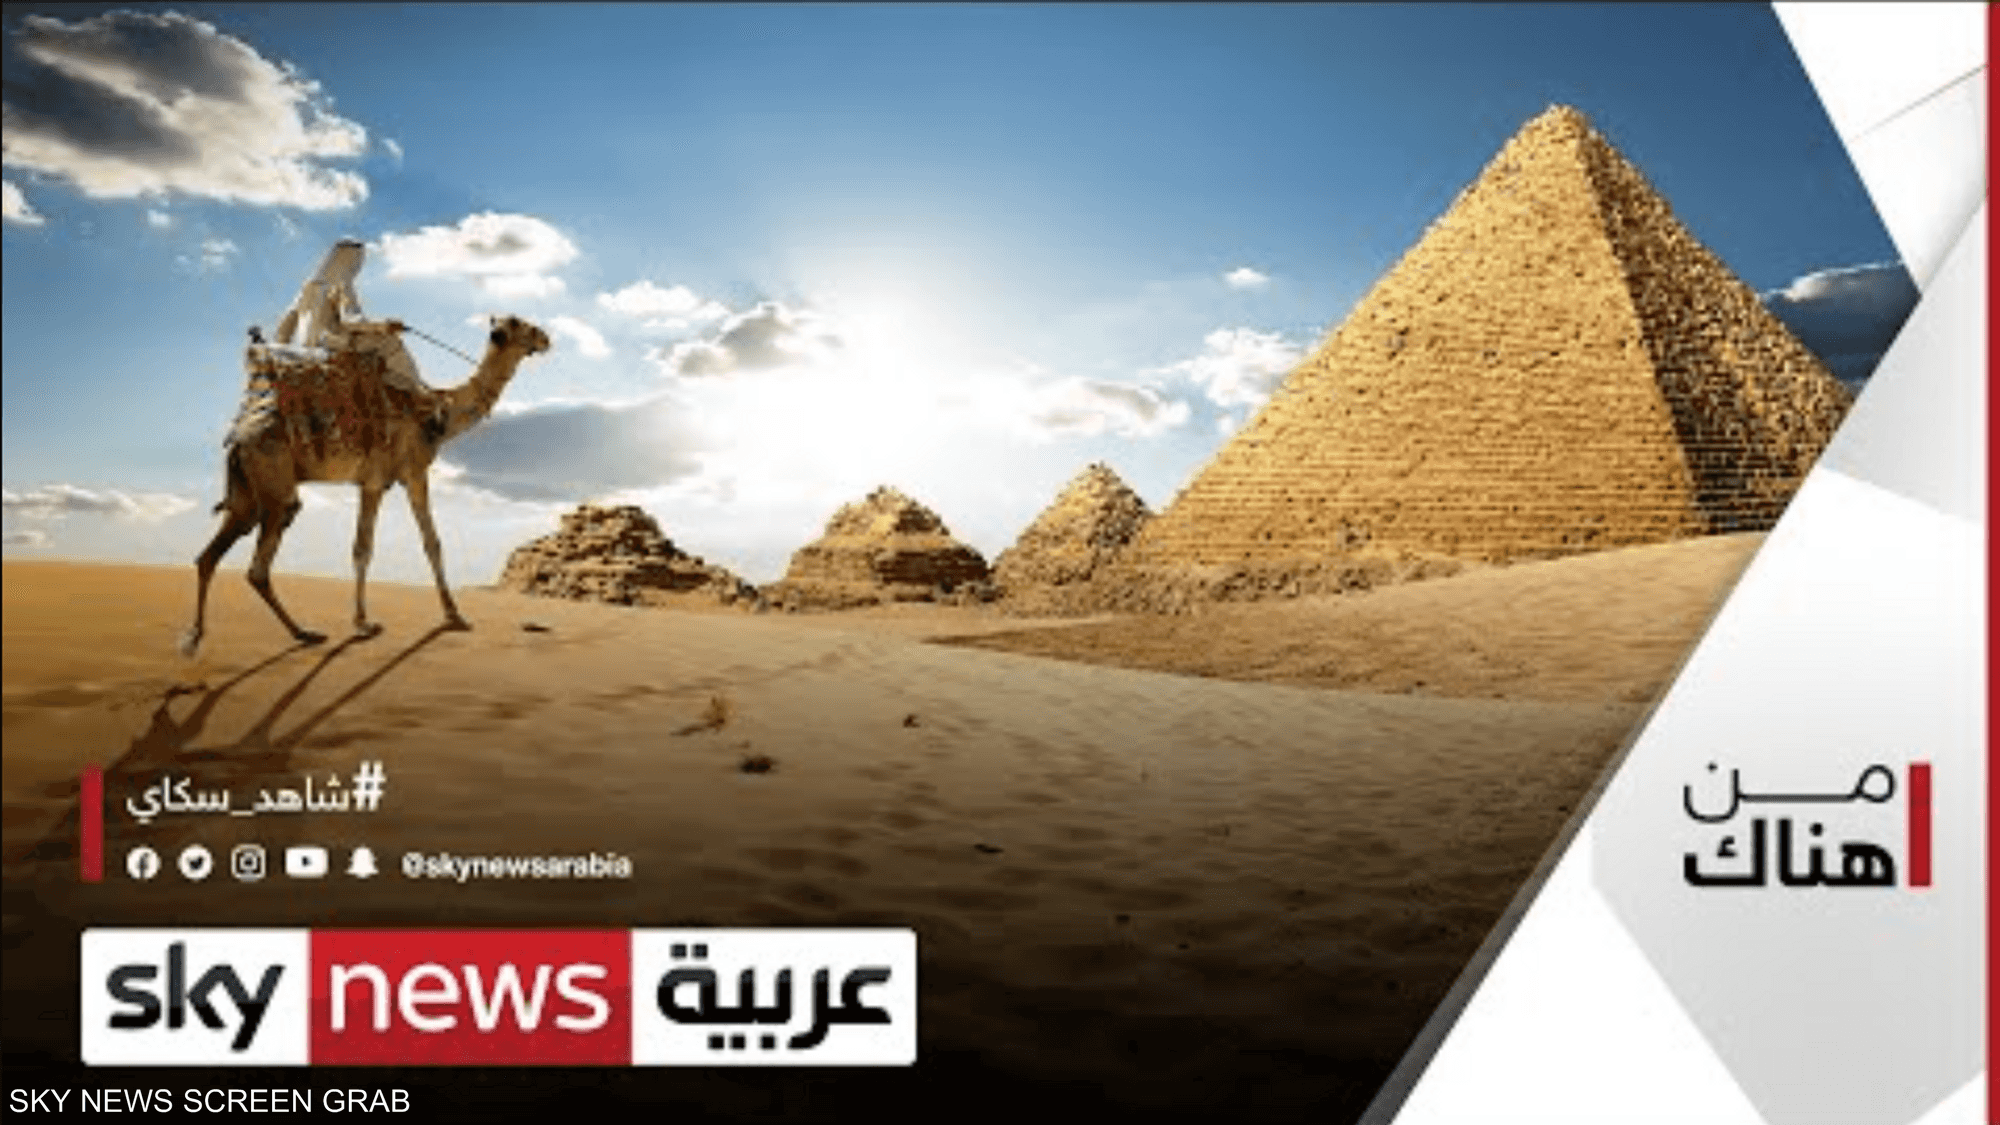 مبادرة أوروبية للترويج السياحي في مناطق الريف المصري